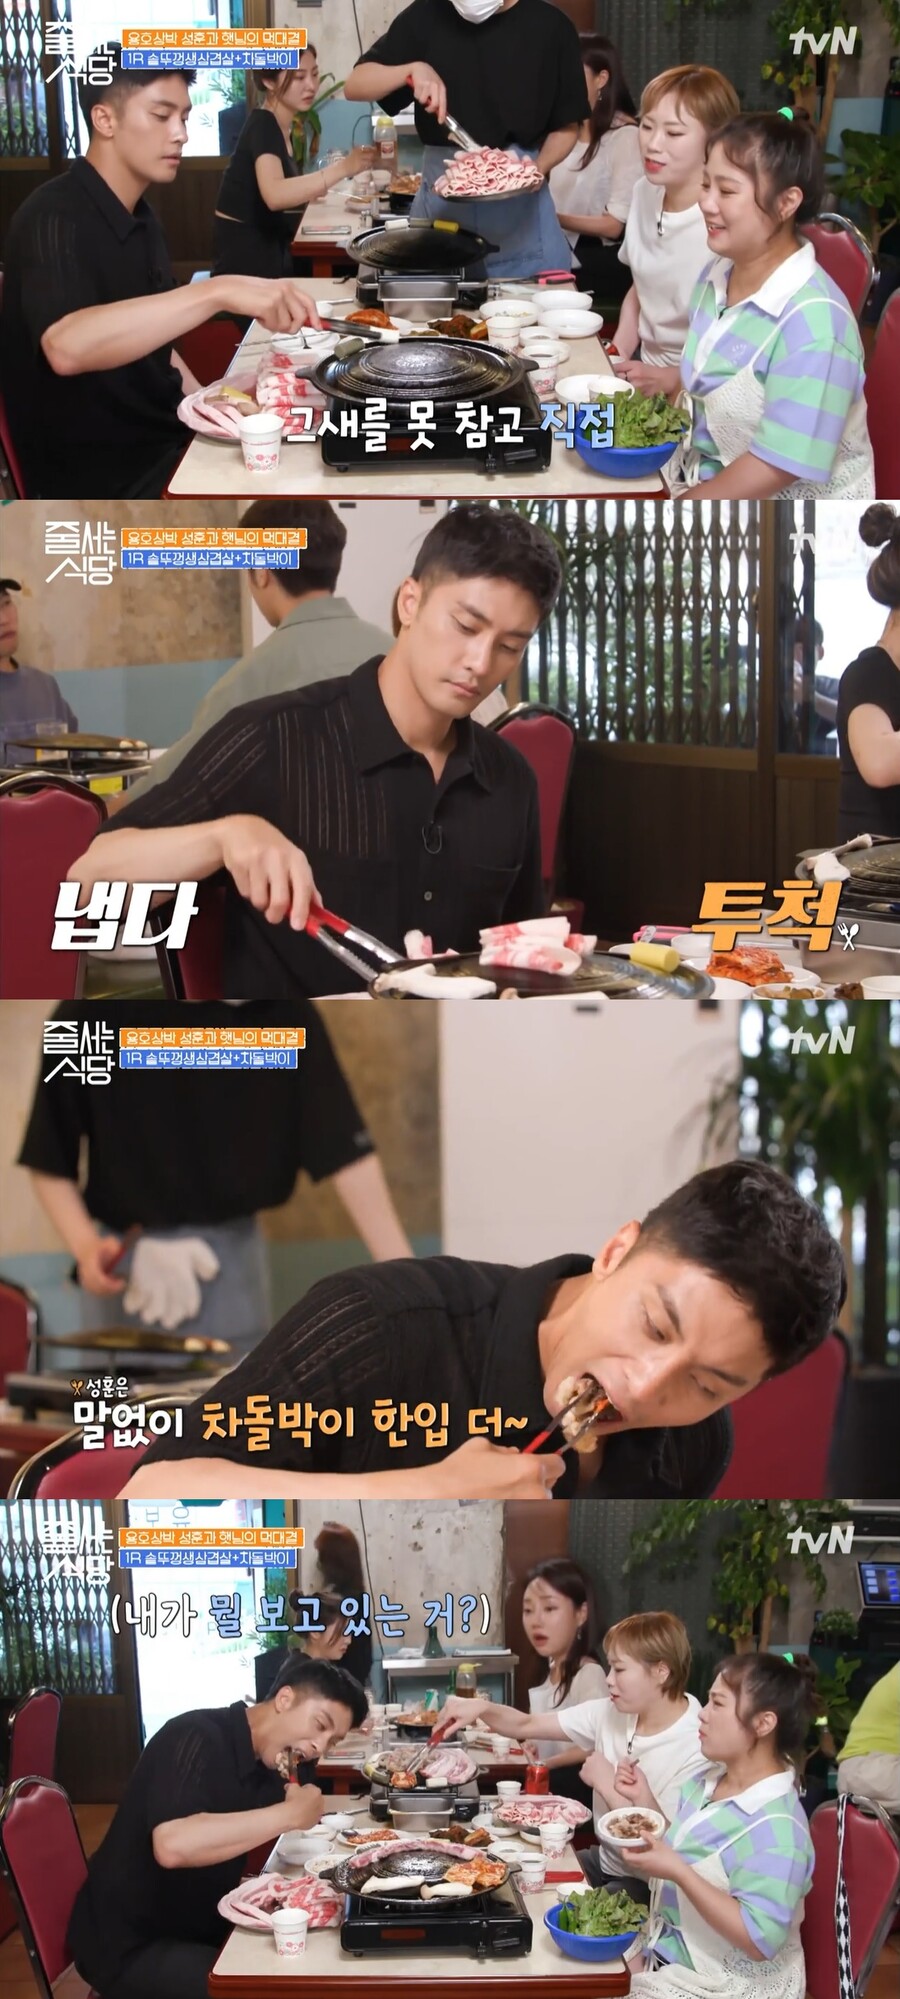 ▲ tvN 예능프로그램 '줄 서는 식당' 배우 성훈. 출처| tvN